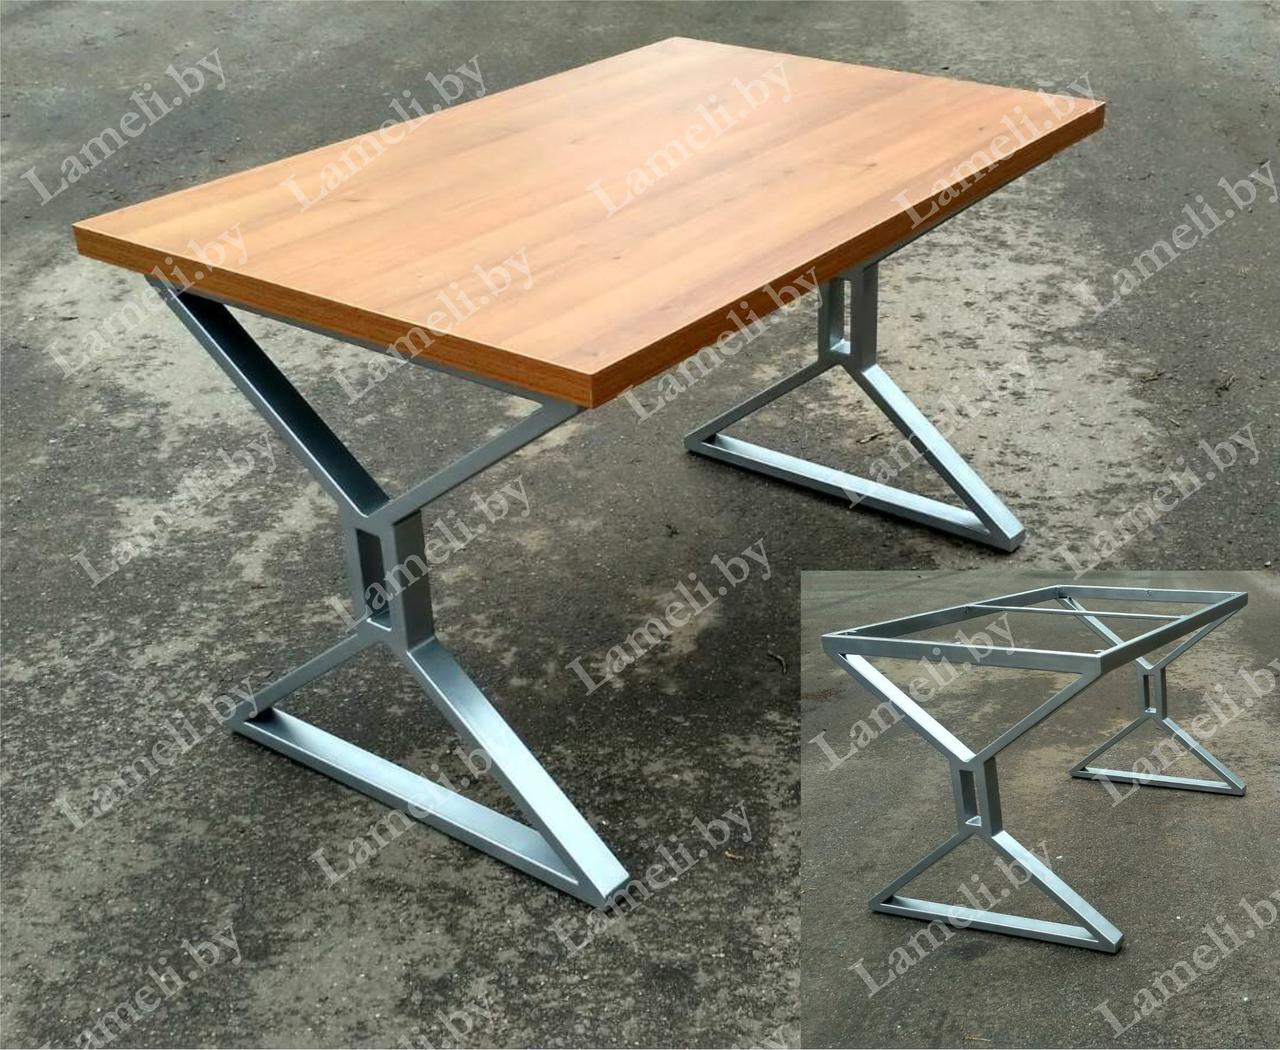 Стол кухонный на металлокаркасе серии "ШП" из постформинга, массива дуба или ЛДСП с выбором размера и цвета, фото 1